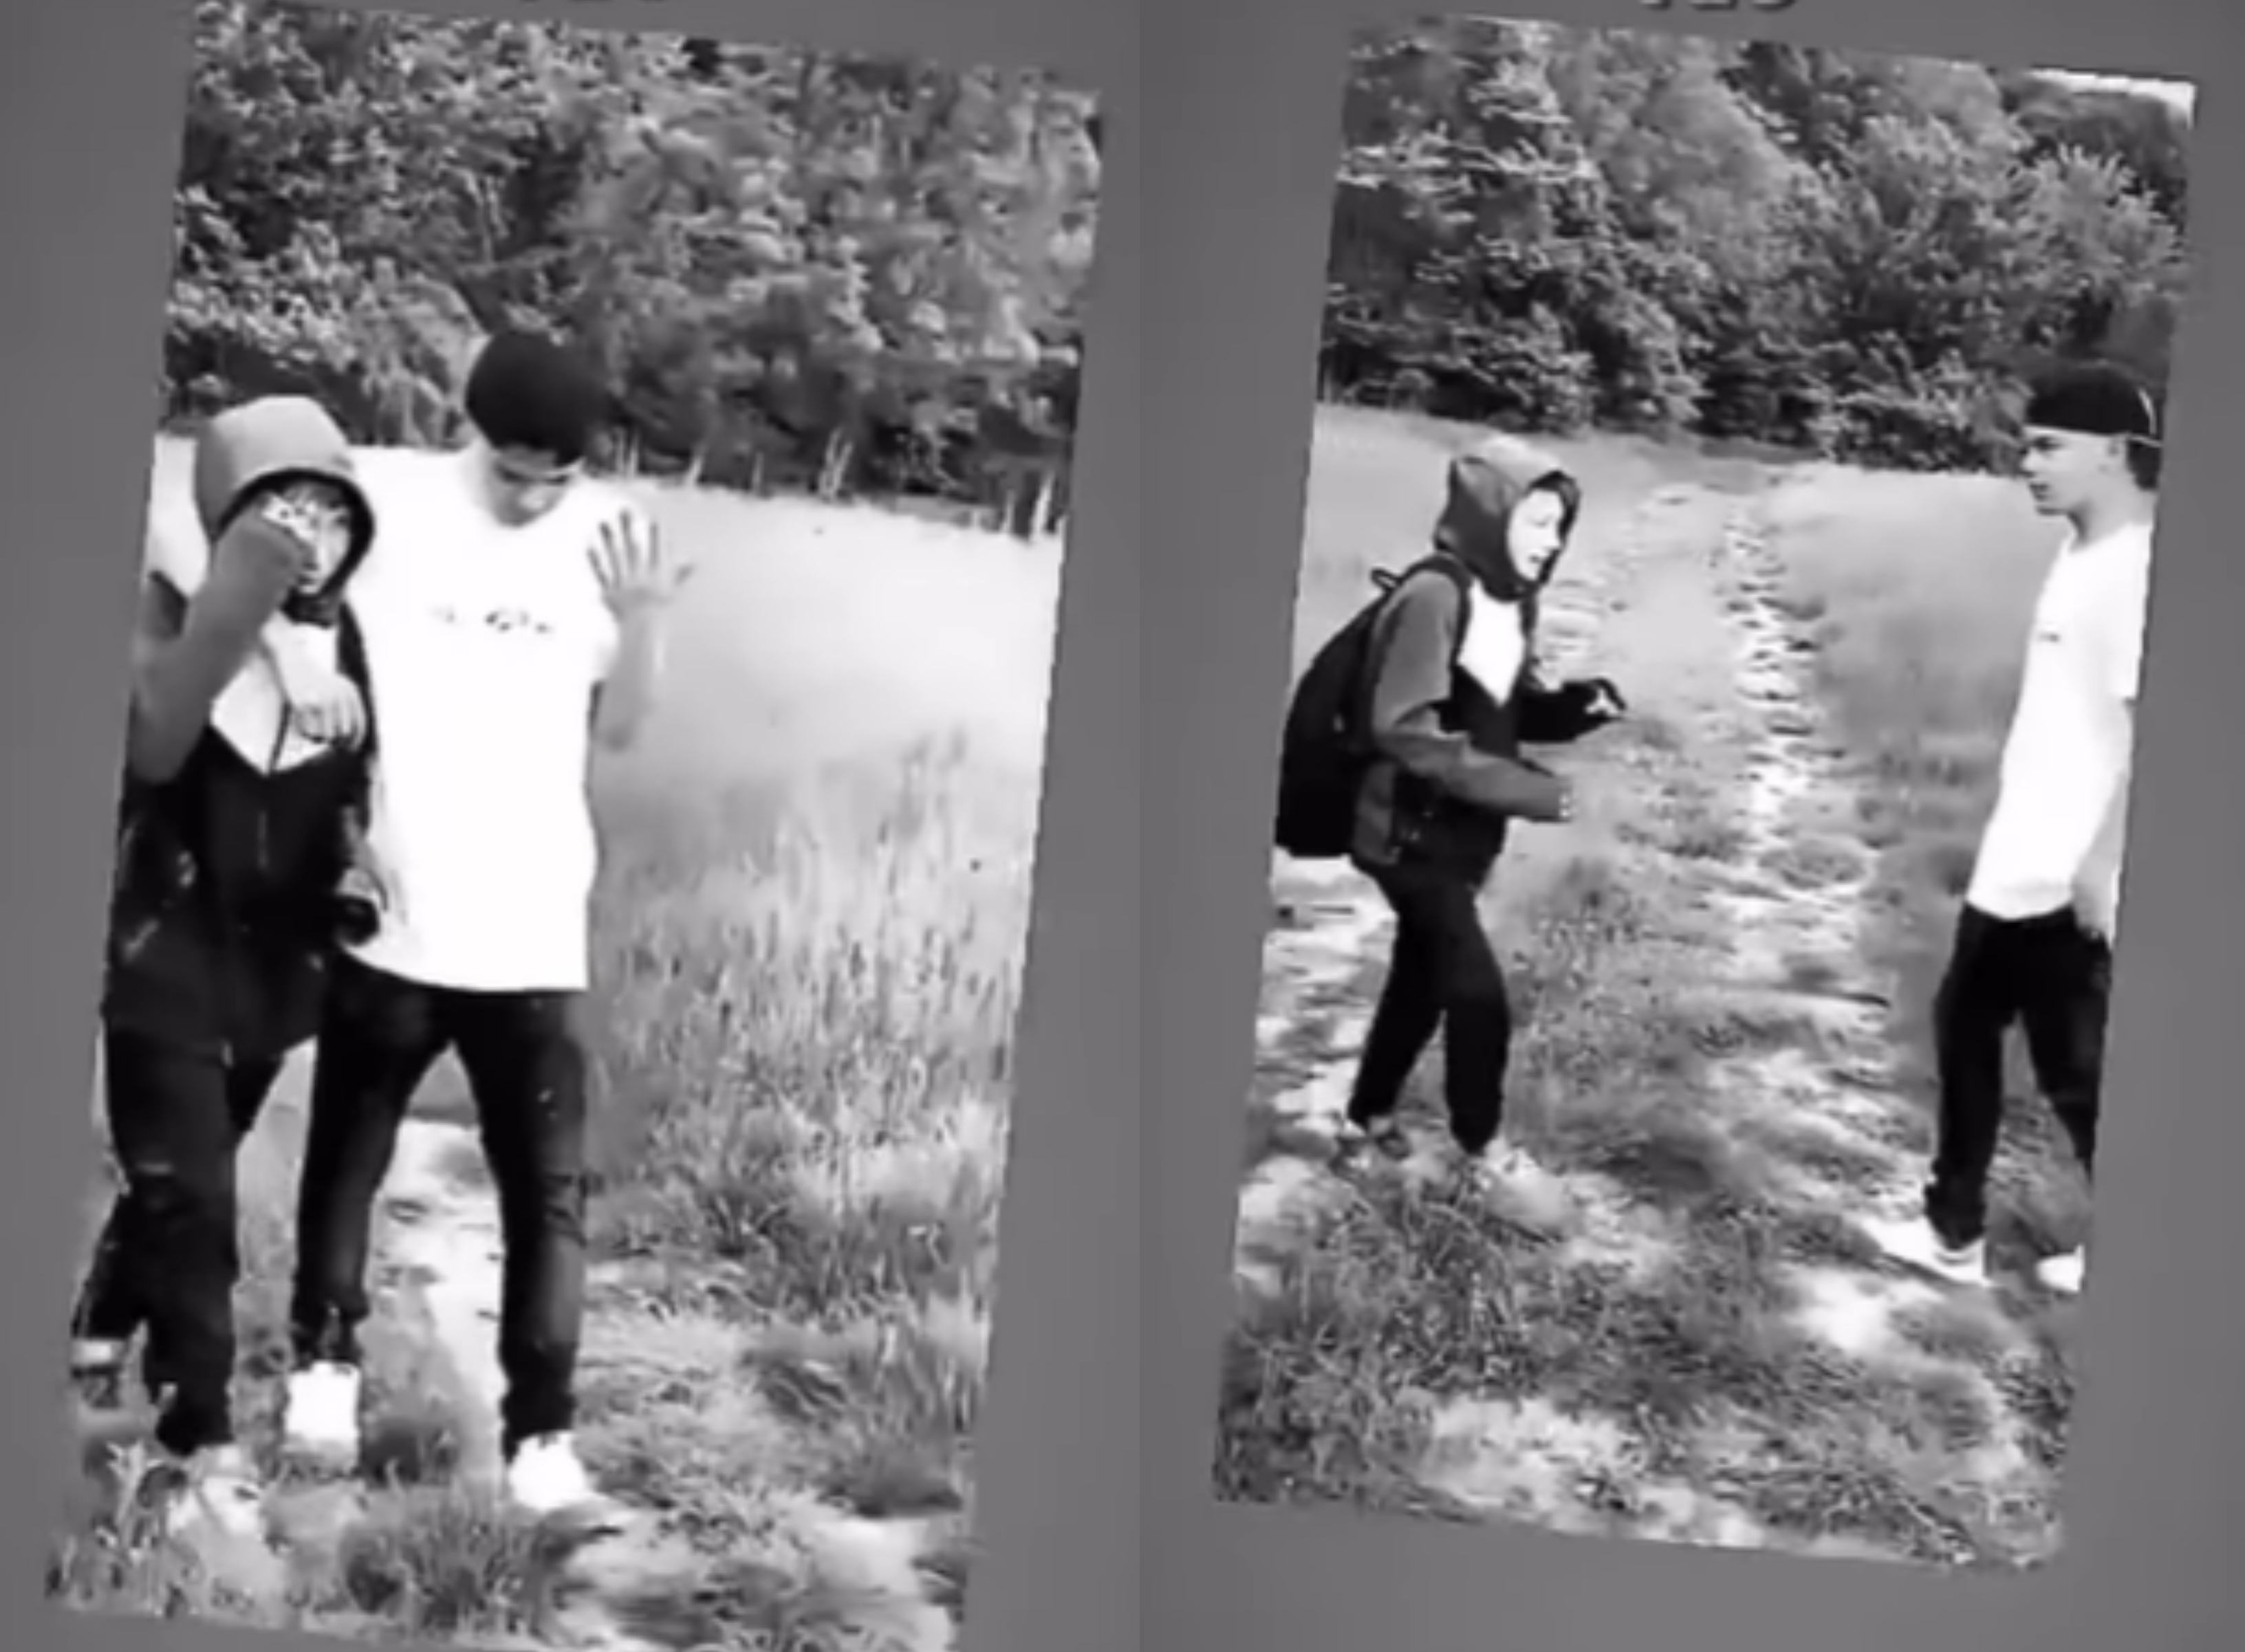 VIDEO. Copil batut de un adolescent pe un camp din Bragadiru, in timp ce alti doi rad si filmeaza!